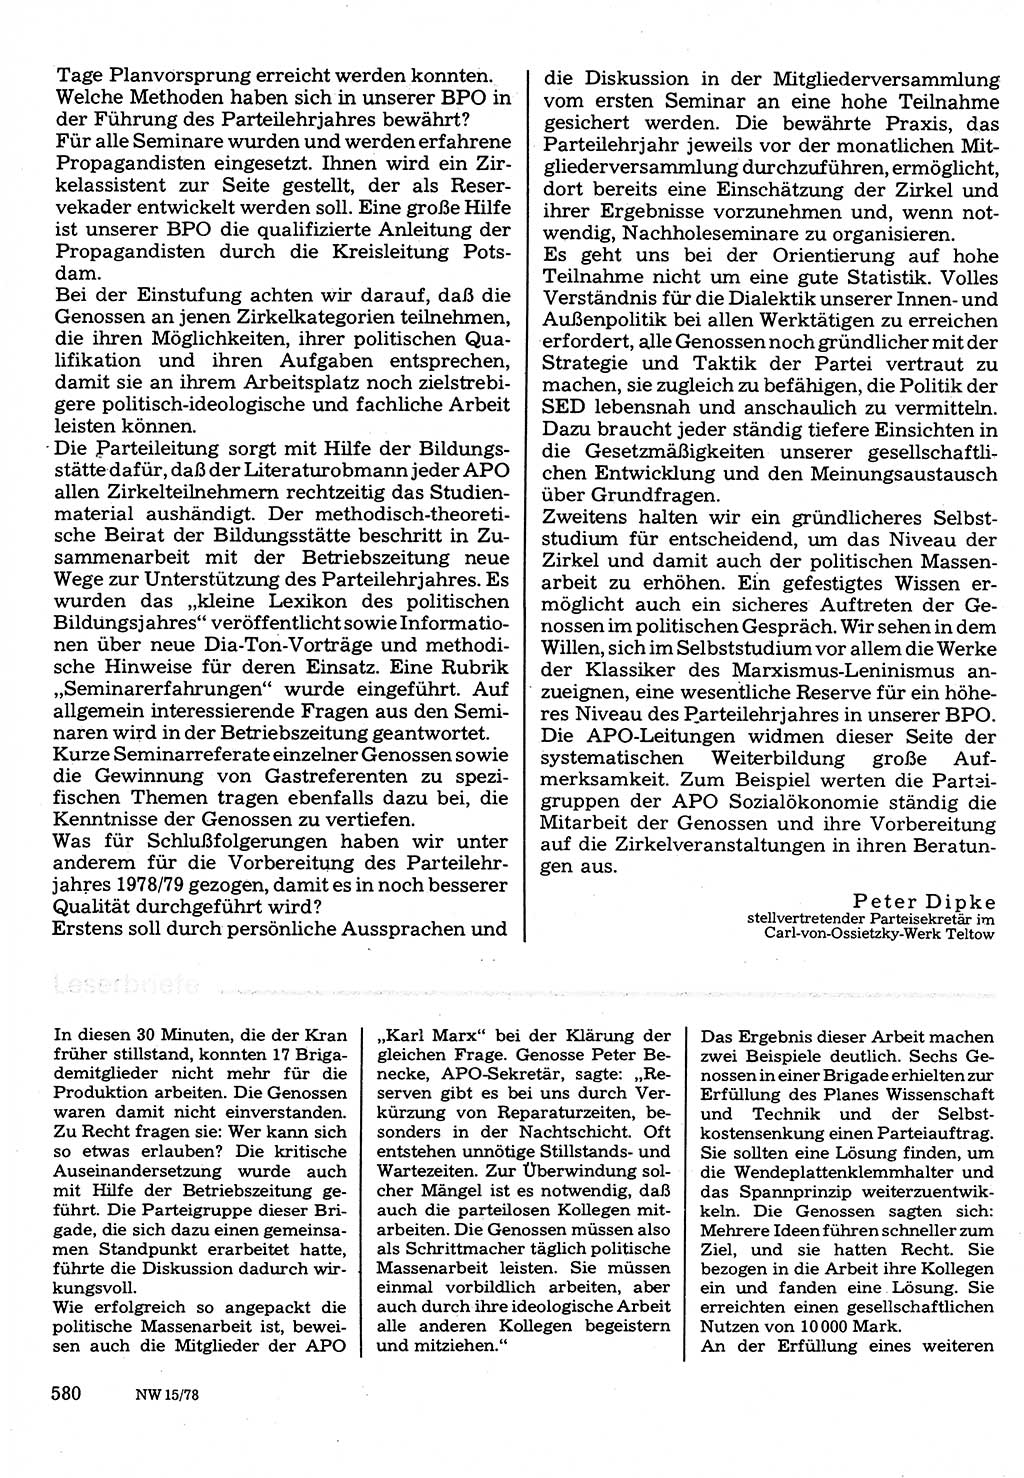 Neuer Weg (NW), Organ des Zentralkomitees (ZK) der SED (Sozialistische Einheitspartei Deutschlands) für Fragen des Parteilebens, 33. Jahrgang [Deutsche Demokratische Republik (DDR)] 1978, Seite 580 (NW ZK SED DDR 1978, S. 580)